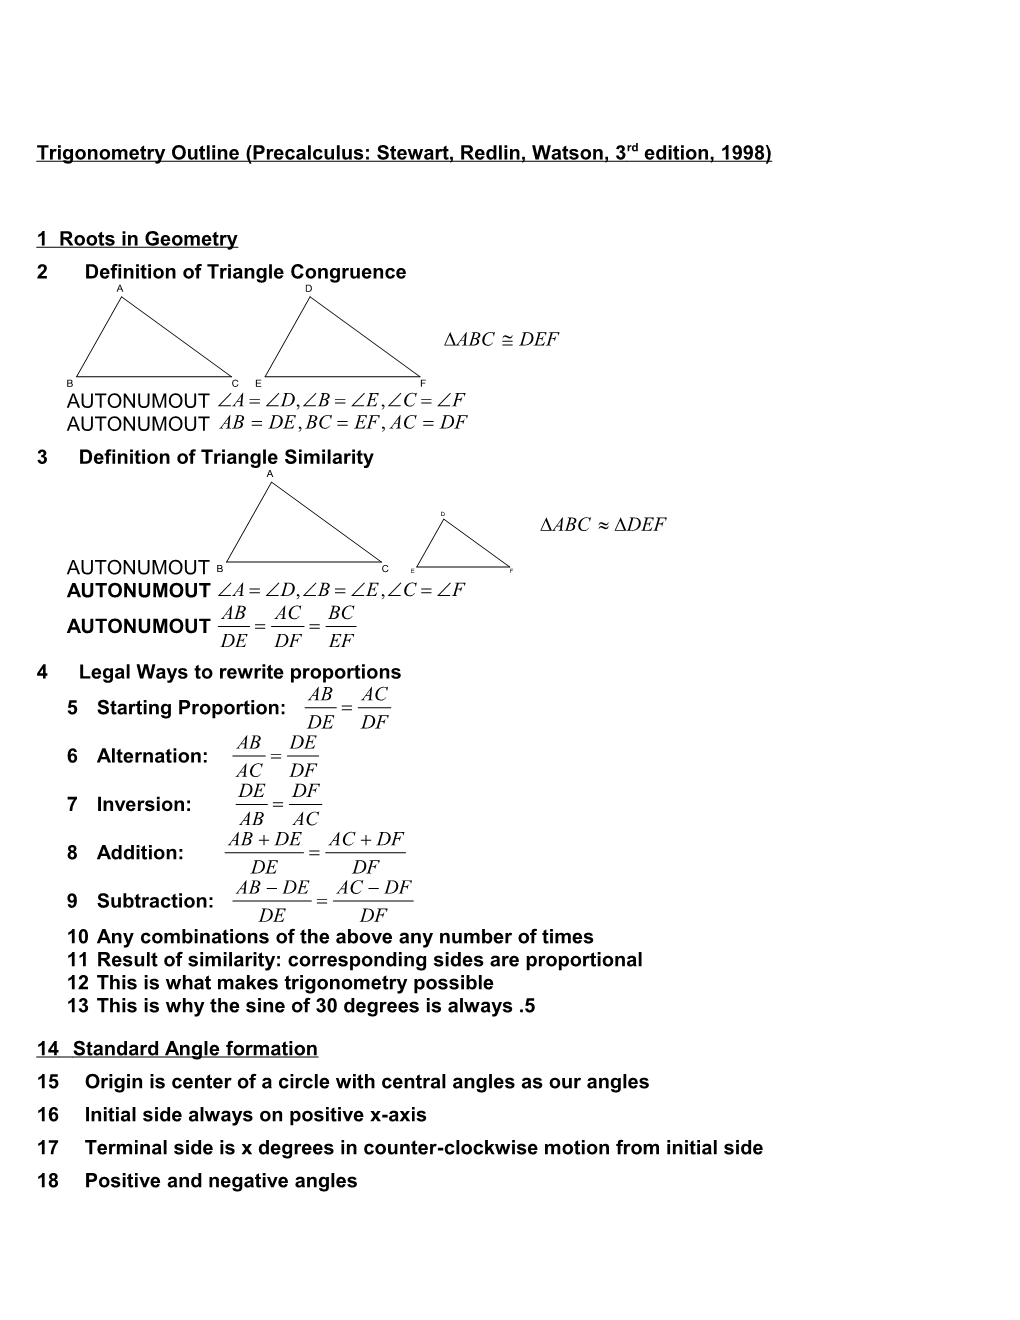 Outline for Teaching Trigonometry